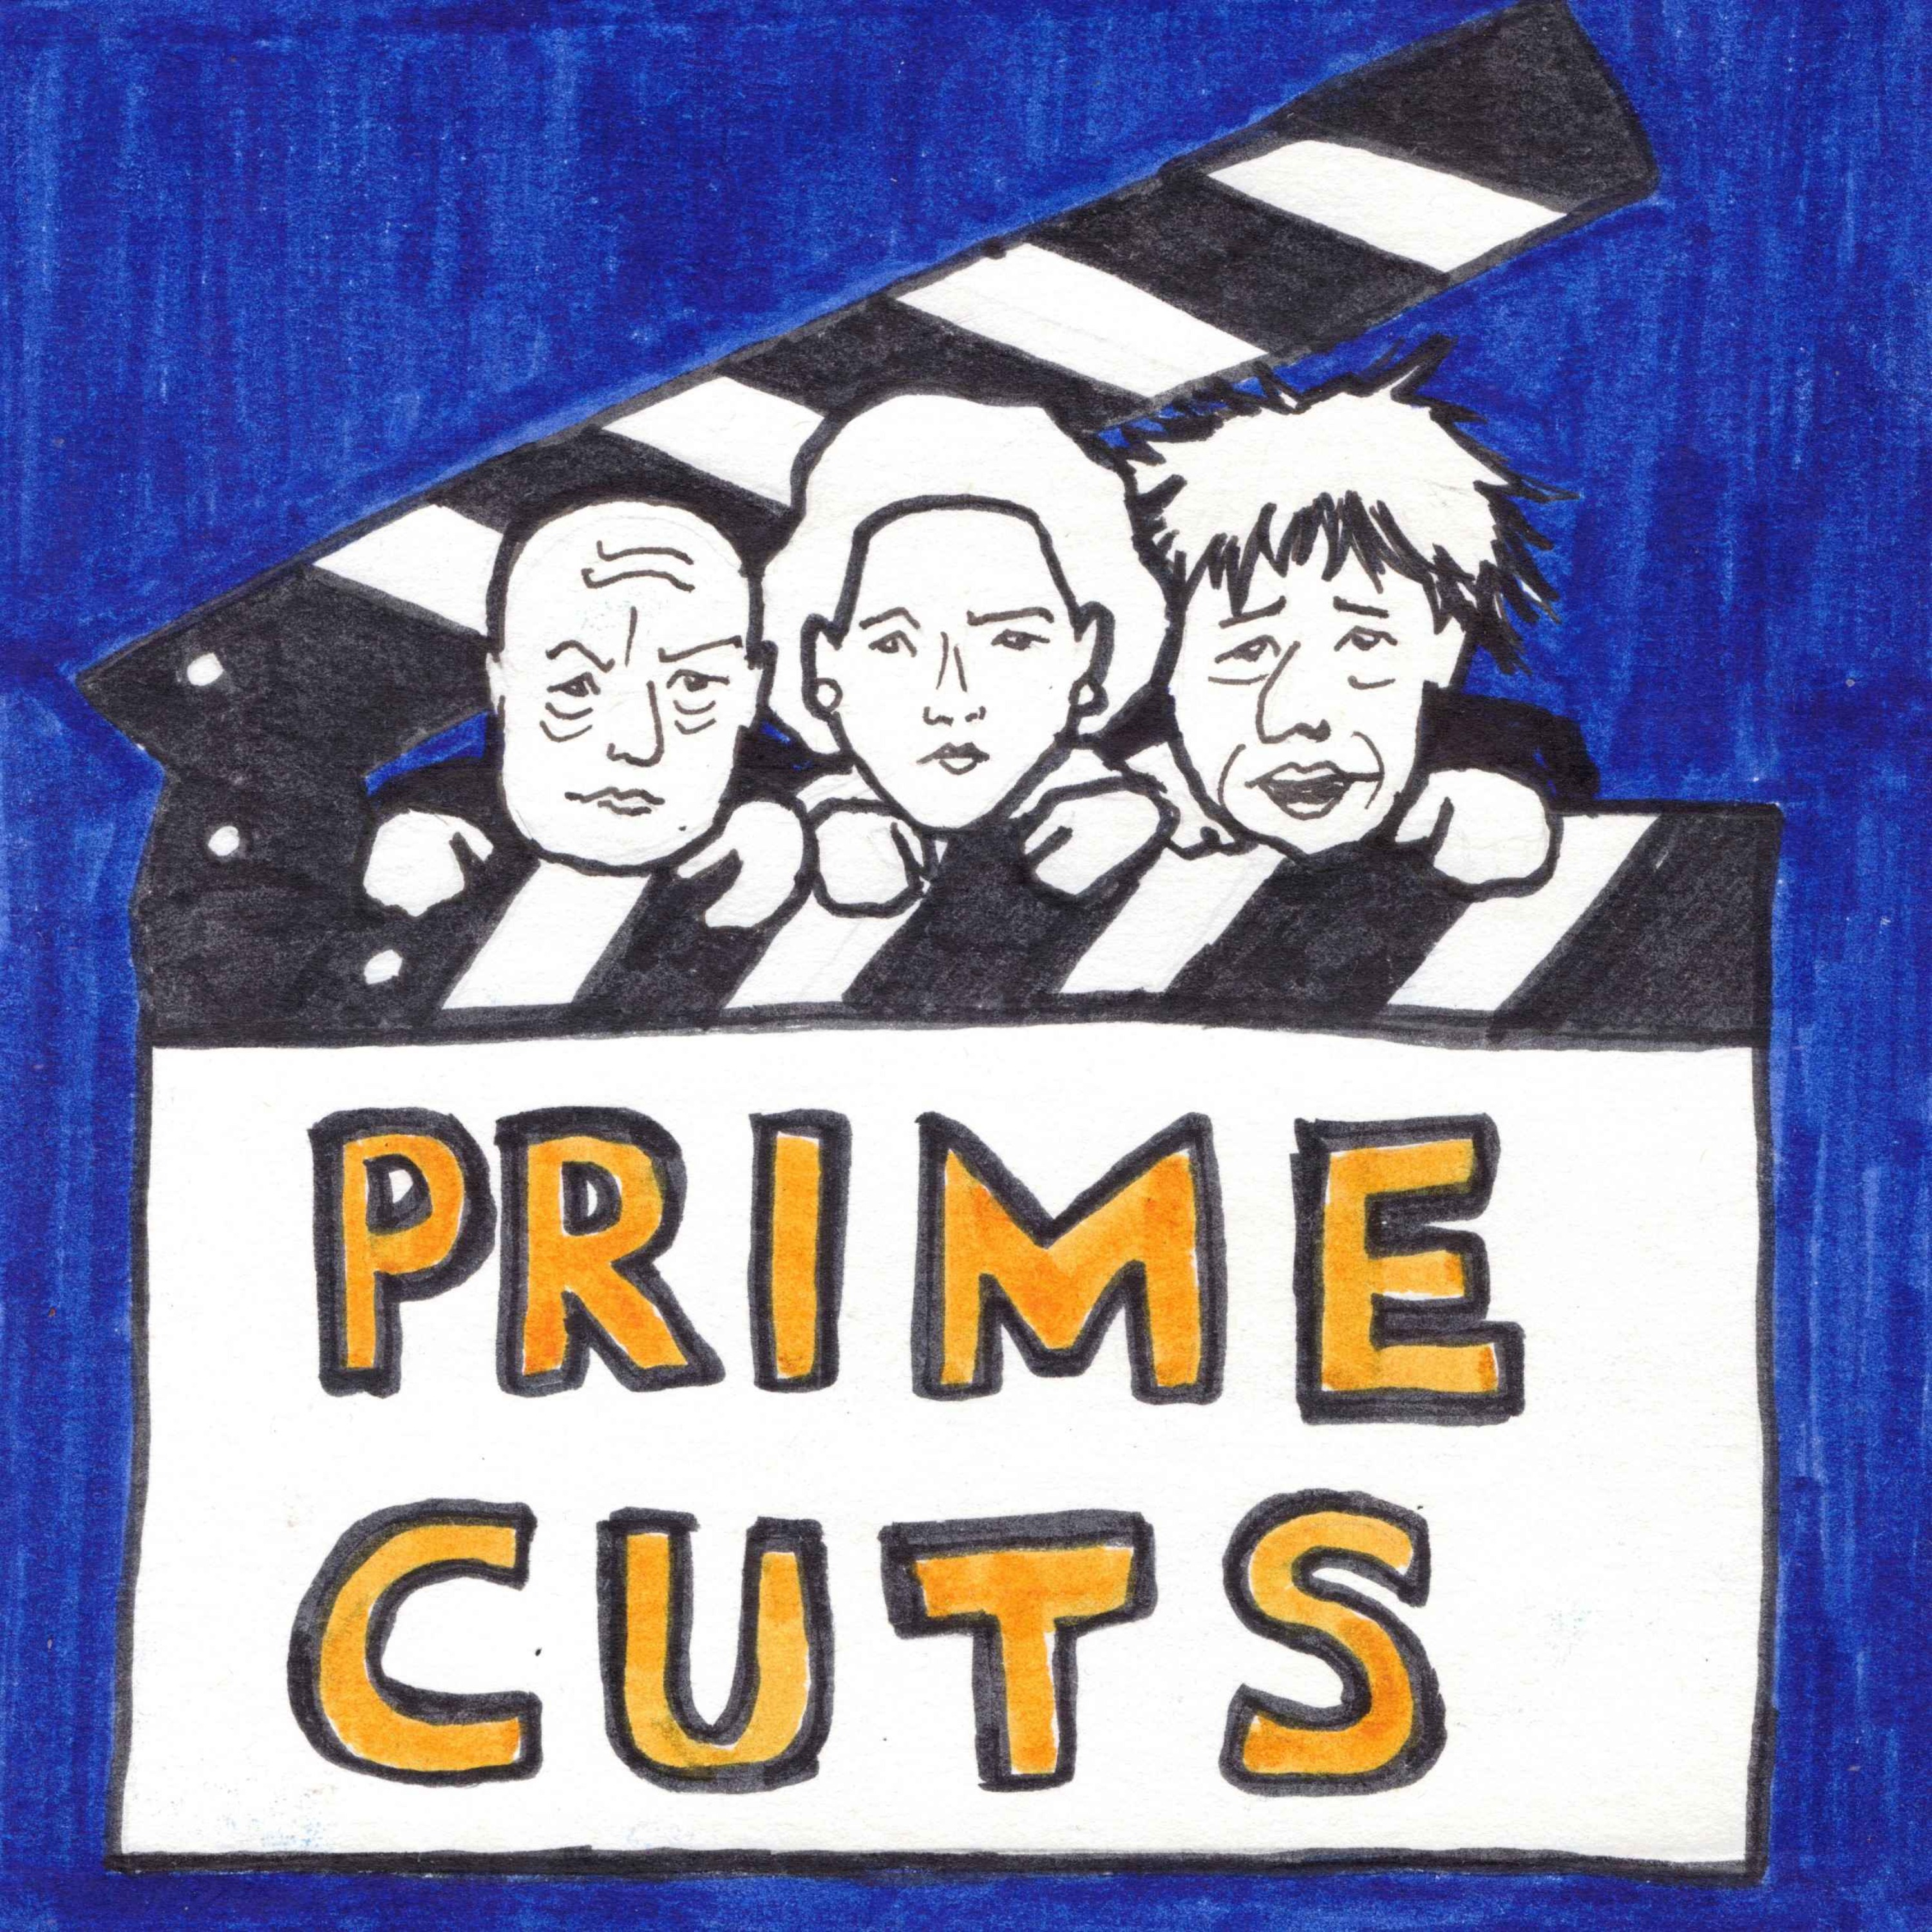 Prime Cuts: Division!